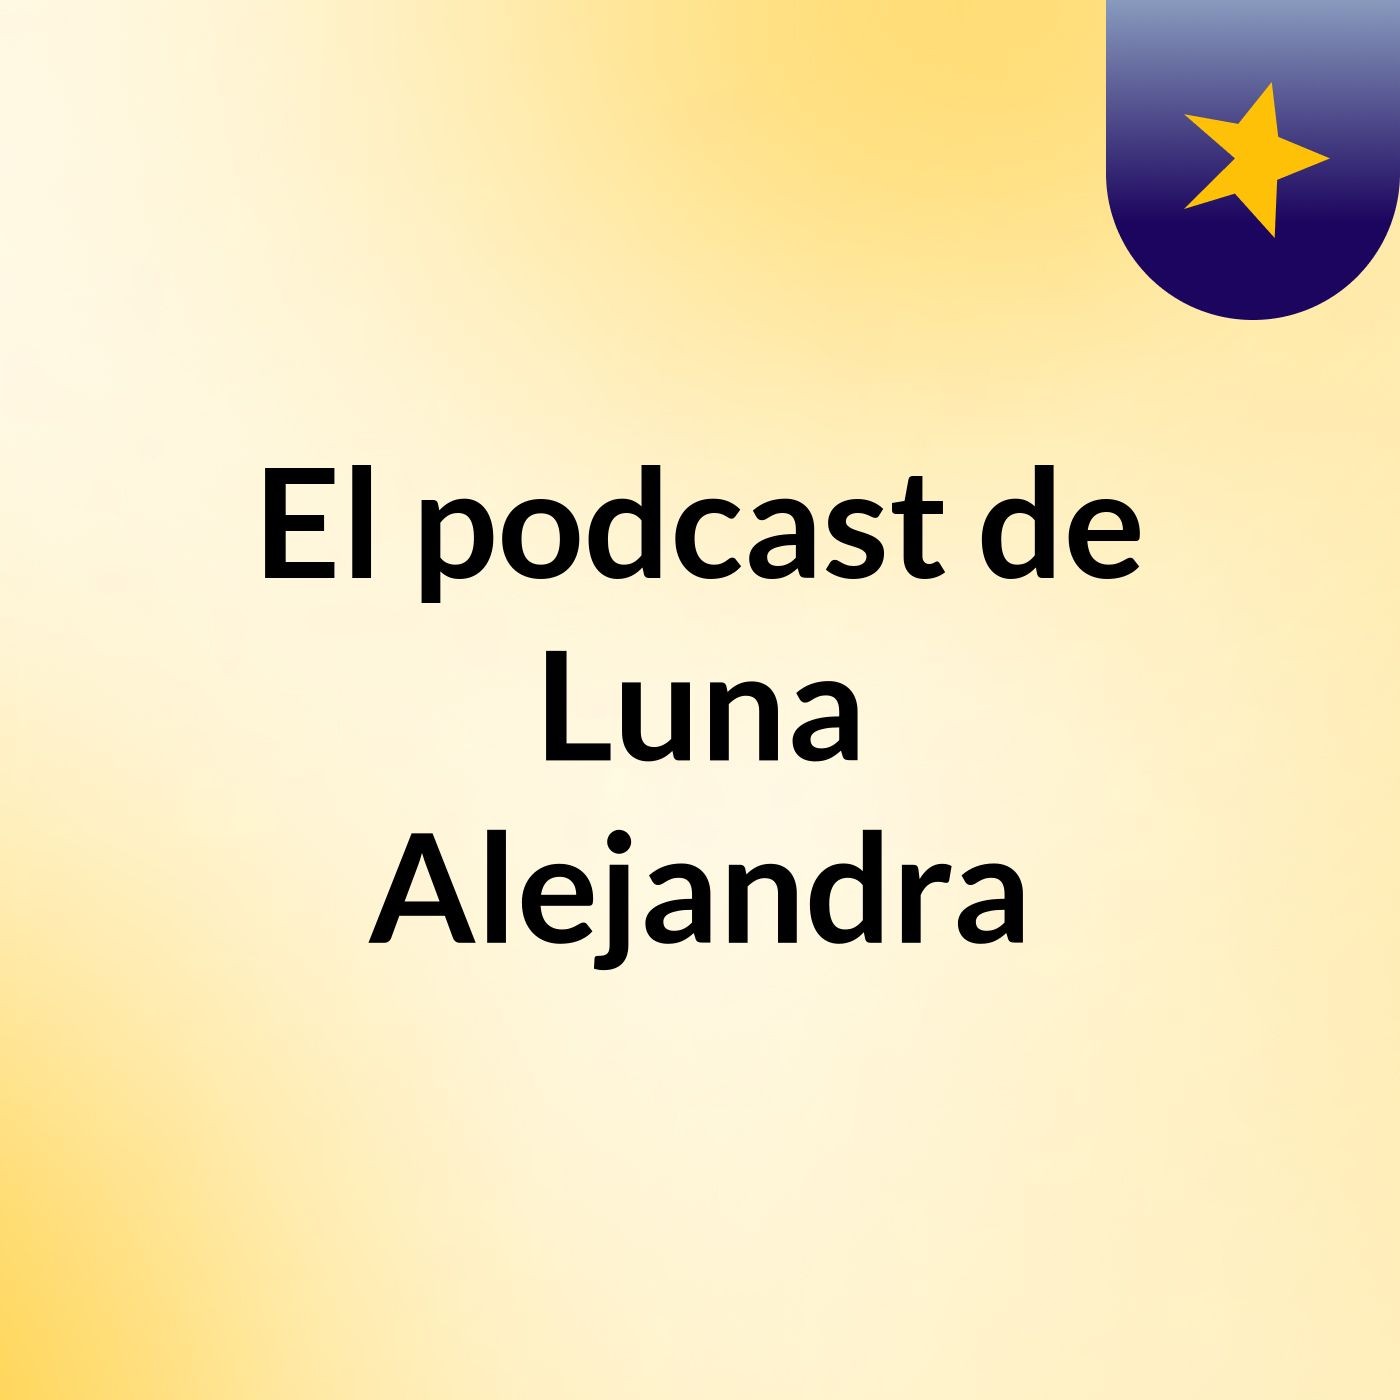 El podcast de Luna Alejandra